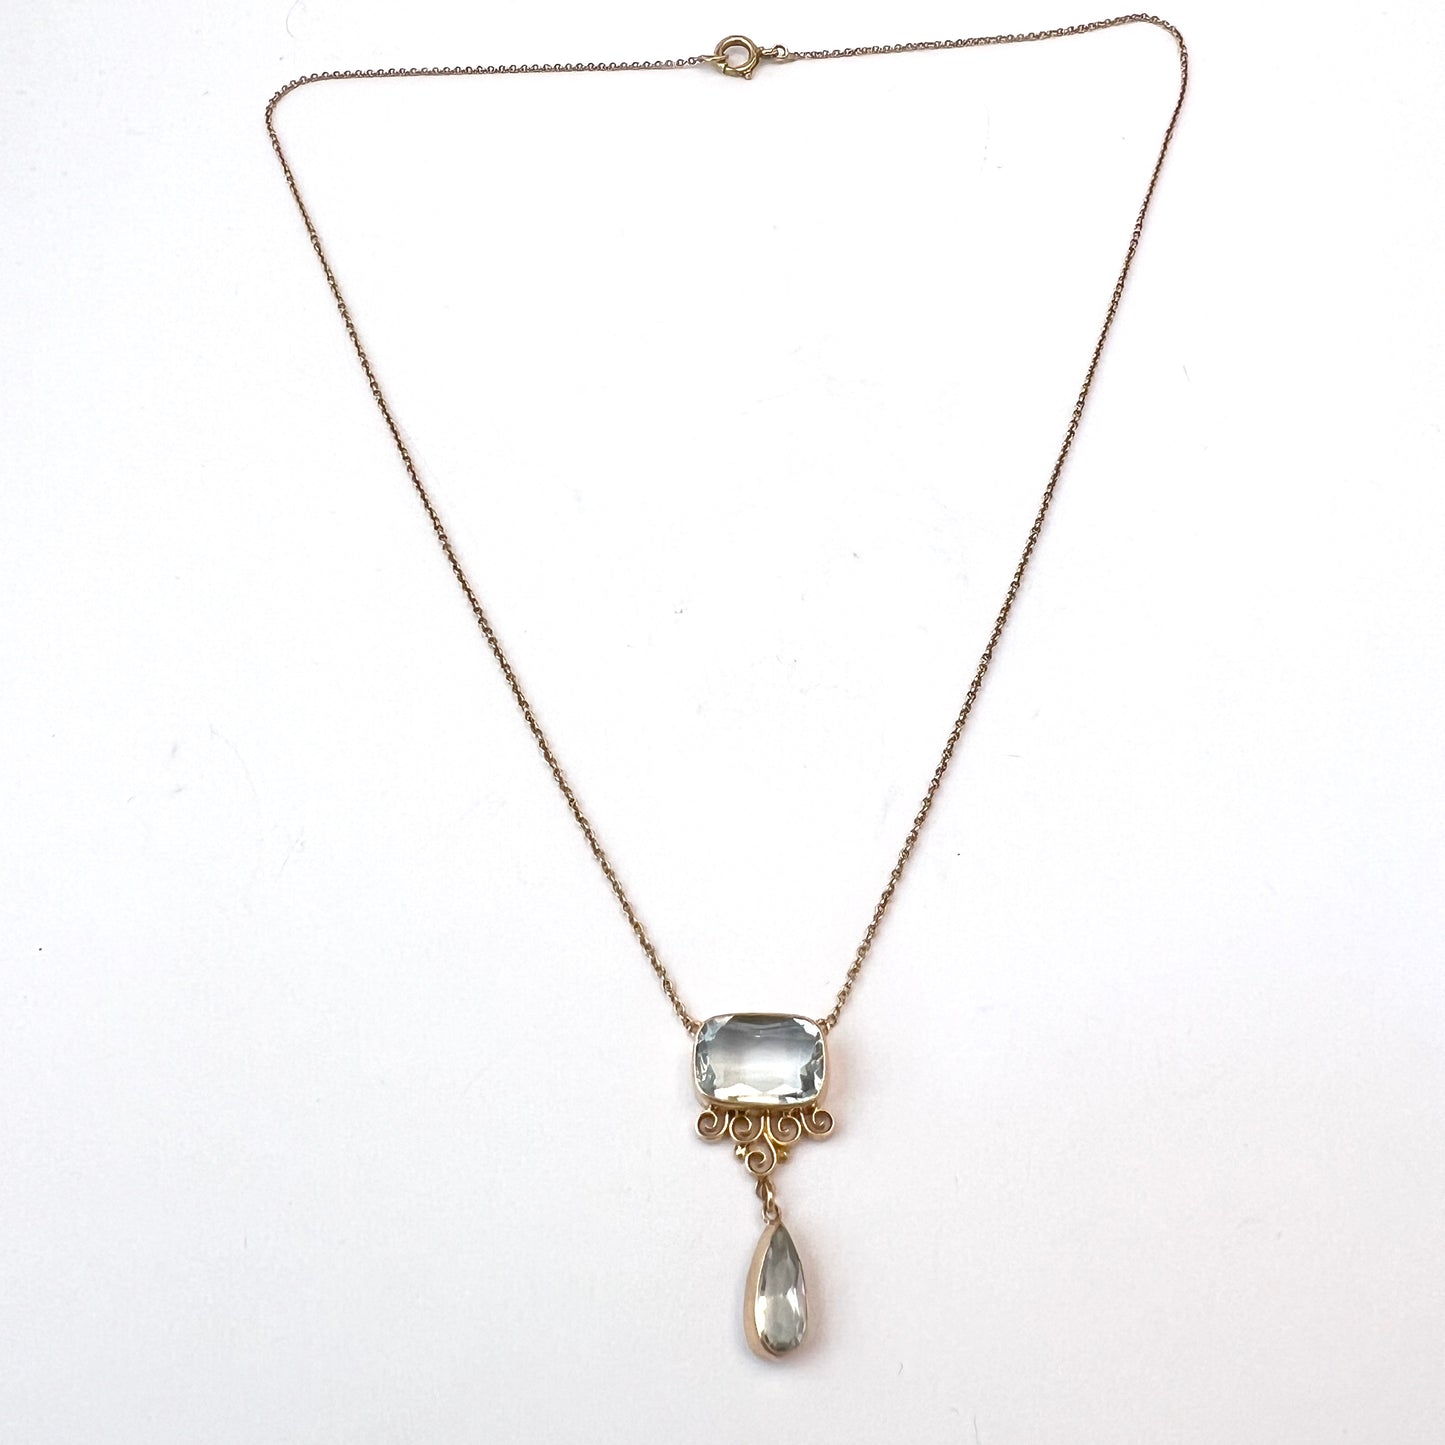 Antique c 1910s 14k Gold Pale Blue Paste Pendant Necklace.